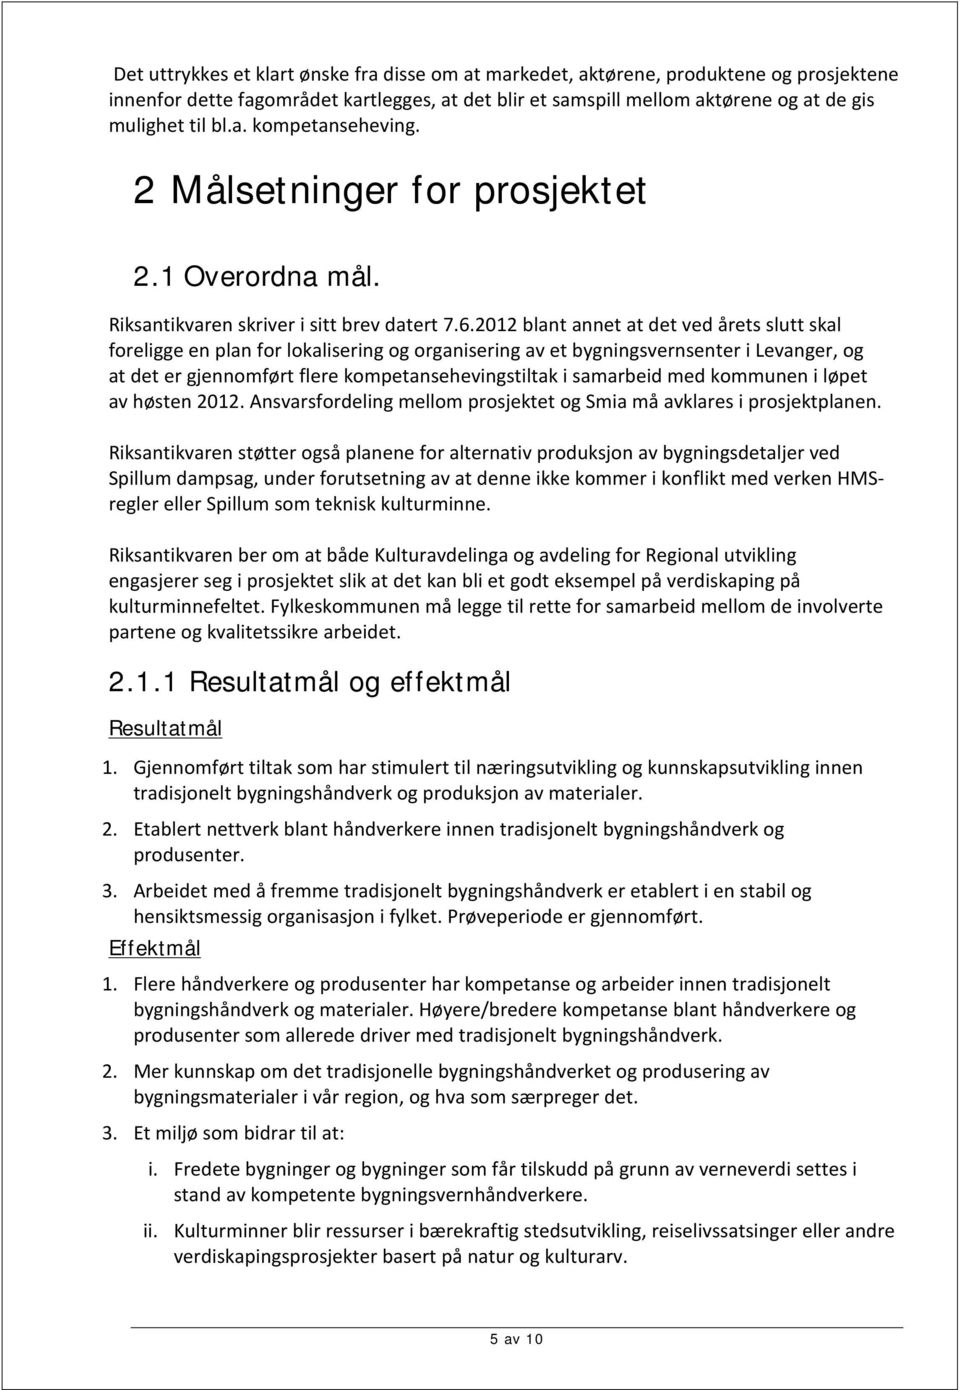 2012 blant annet at det ved årets slutt skal foreligge en plan for lokalisering og organisering av et bygningsvernsenter i Levanger, og at det er gjennomført flere kompetansehevingstiltak i samarbeid